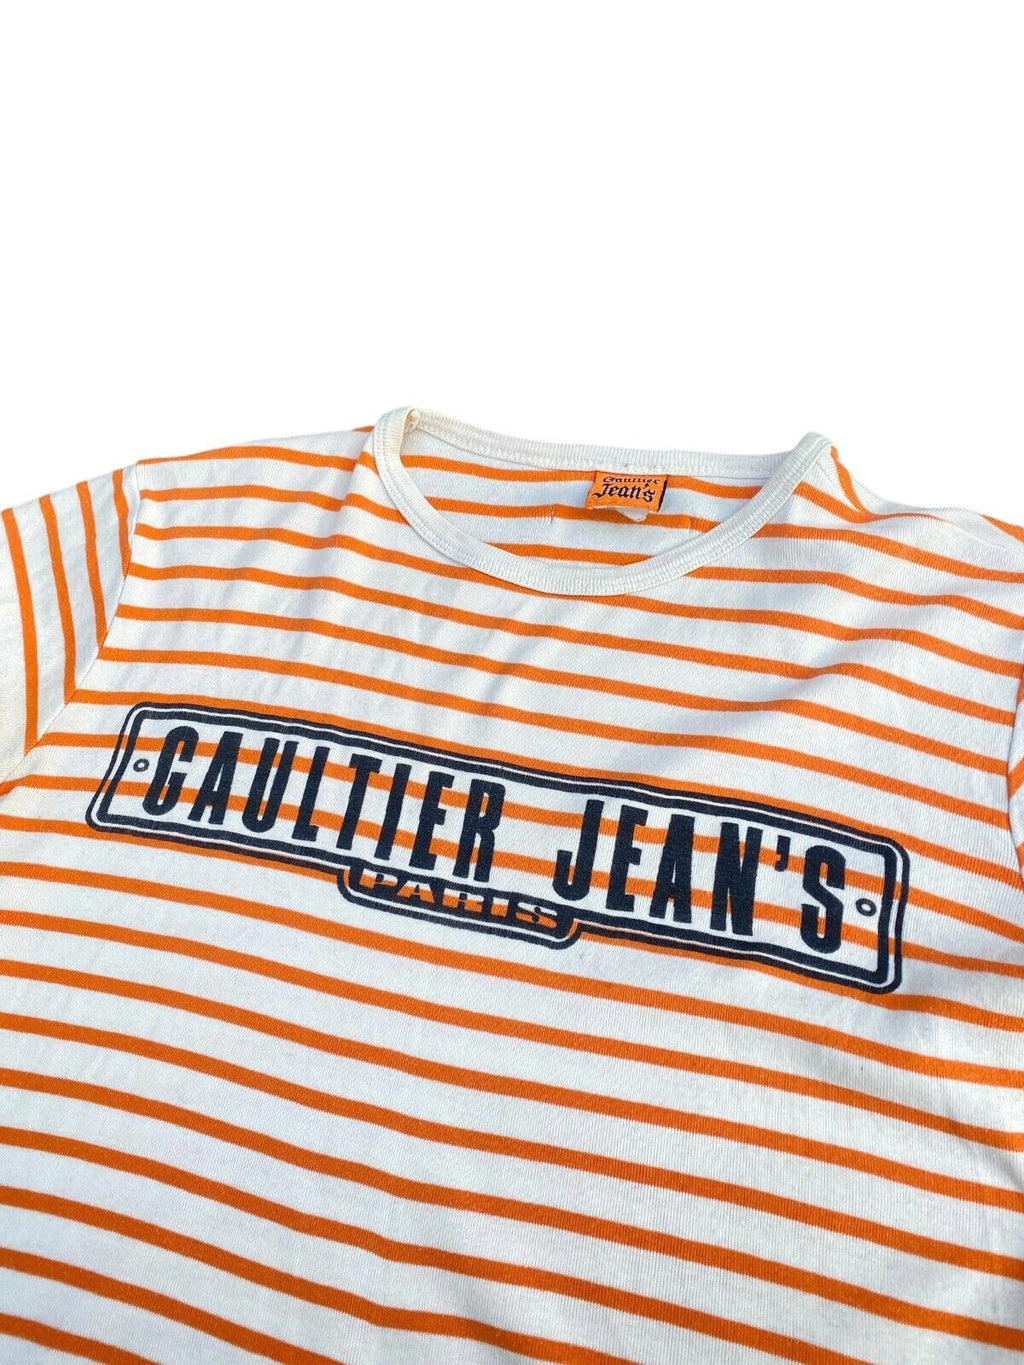 Vintage Striped T-shirt Size Men L fits M  Unisex